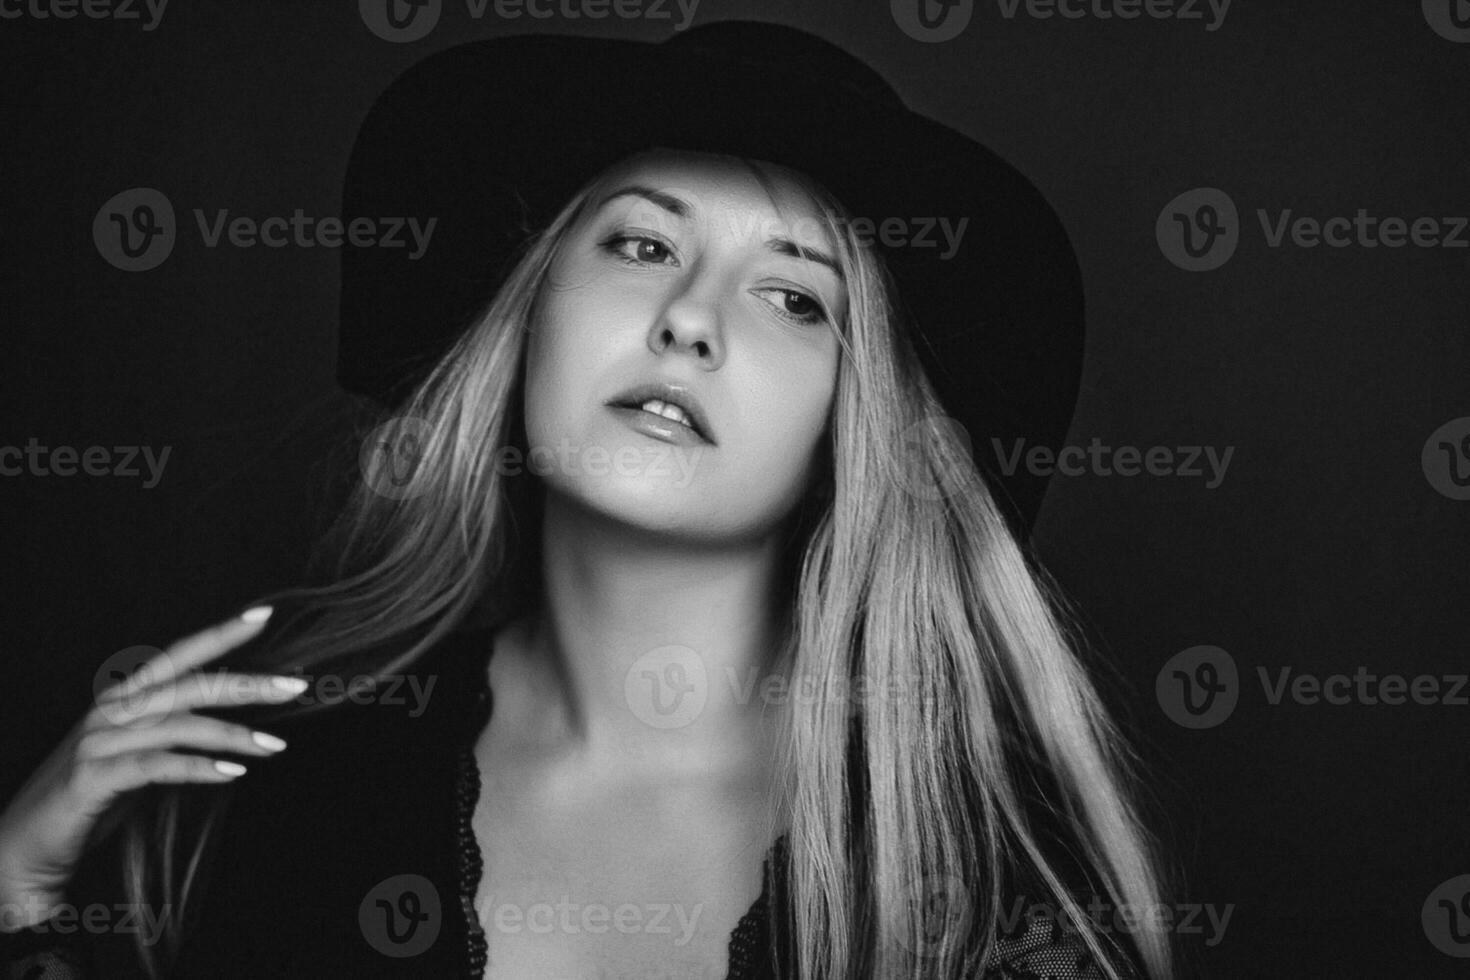 mooi blond vrouw vervelend een hoed, artistiek film portret in zwart en wit voor mode campagne en schoonheid merk foto